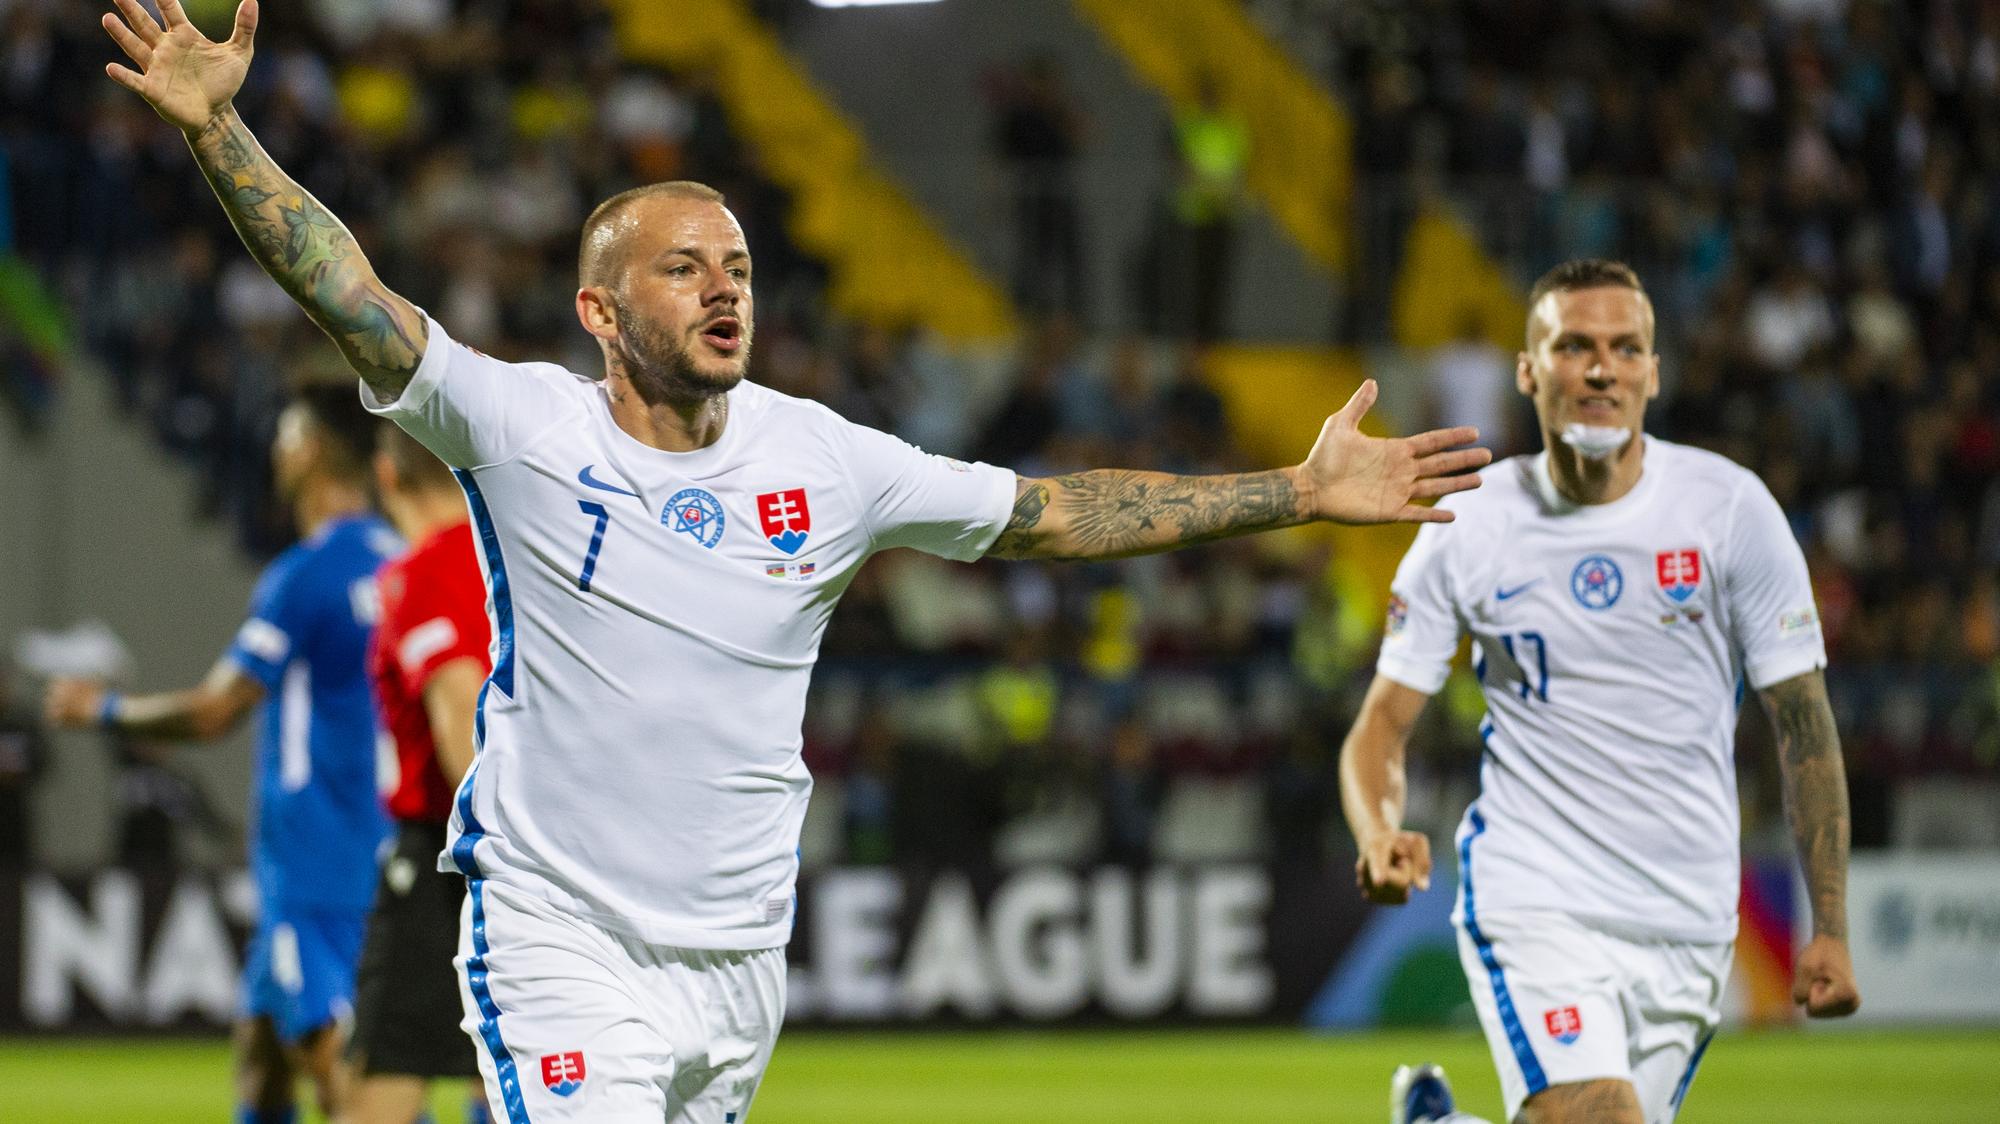 Liga národov - futbal dnes Azerbajdžan - Slovensko 0:1 | Šport.sk